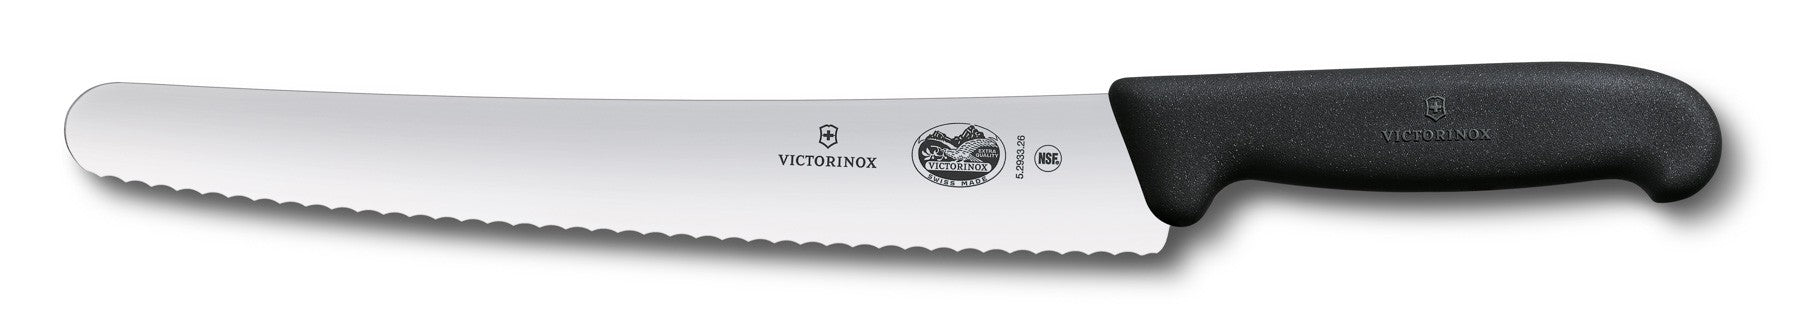 Victorinox Fibrox Pro 10" Serrated Bread Knife - 40547